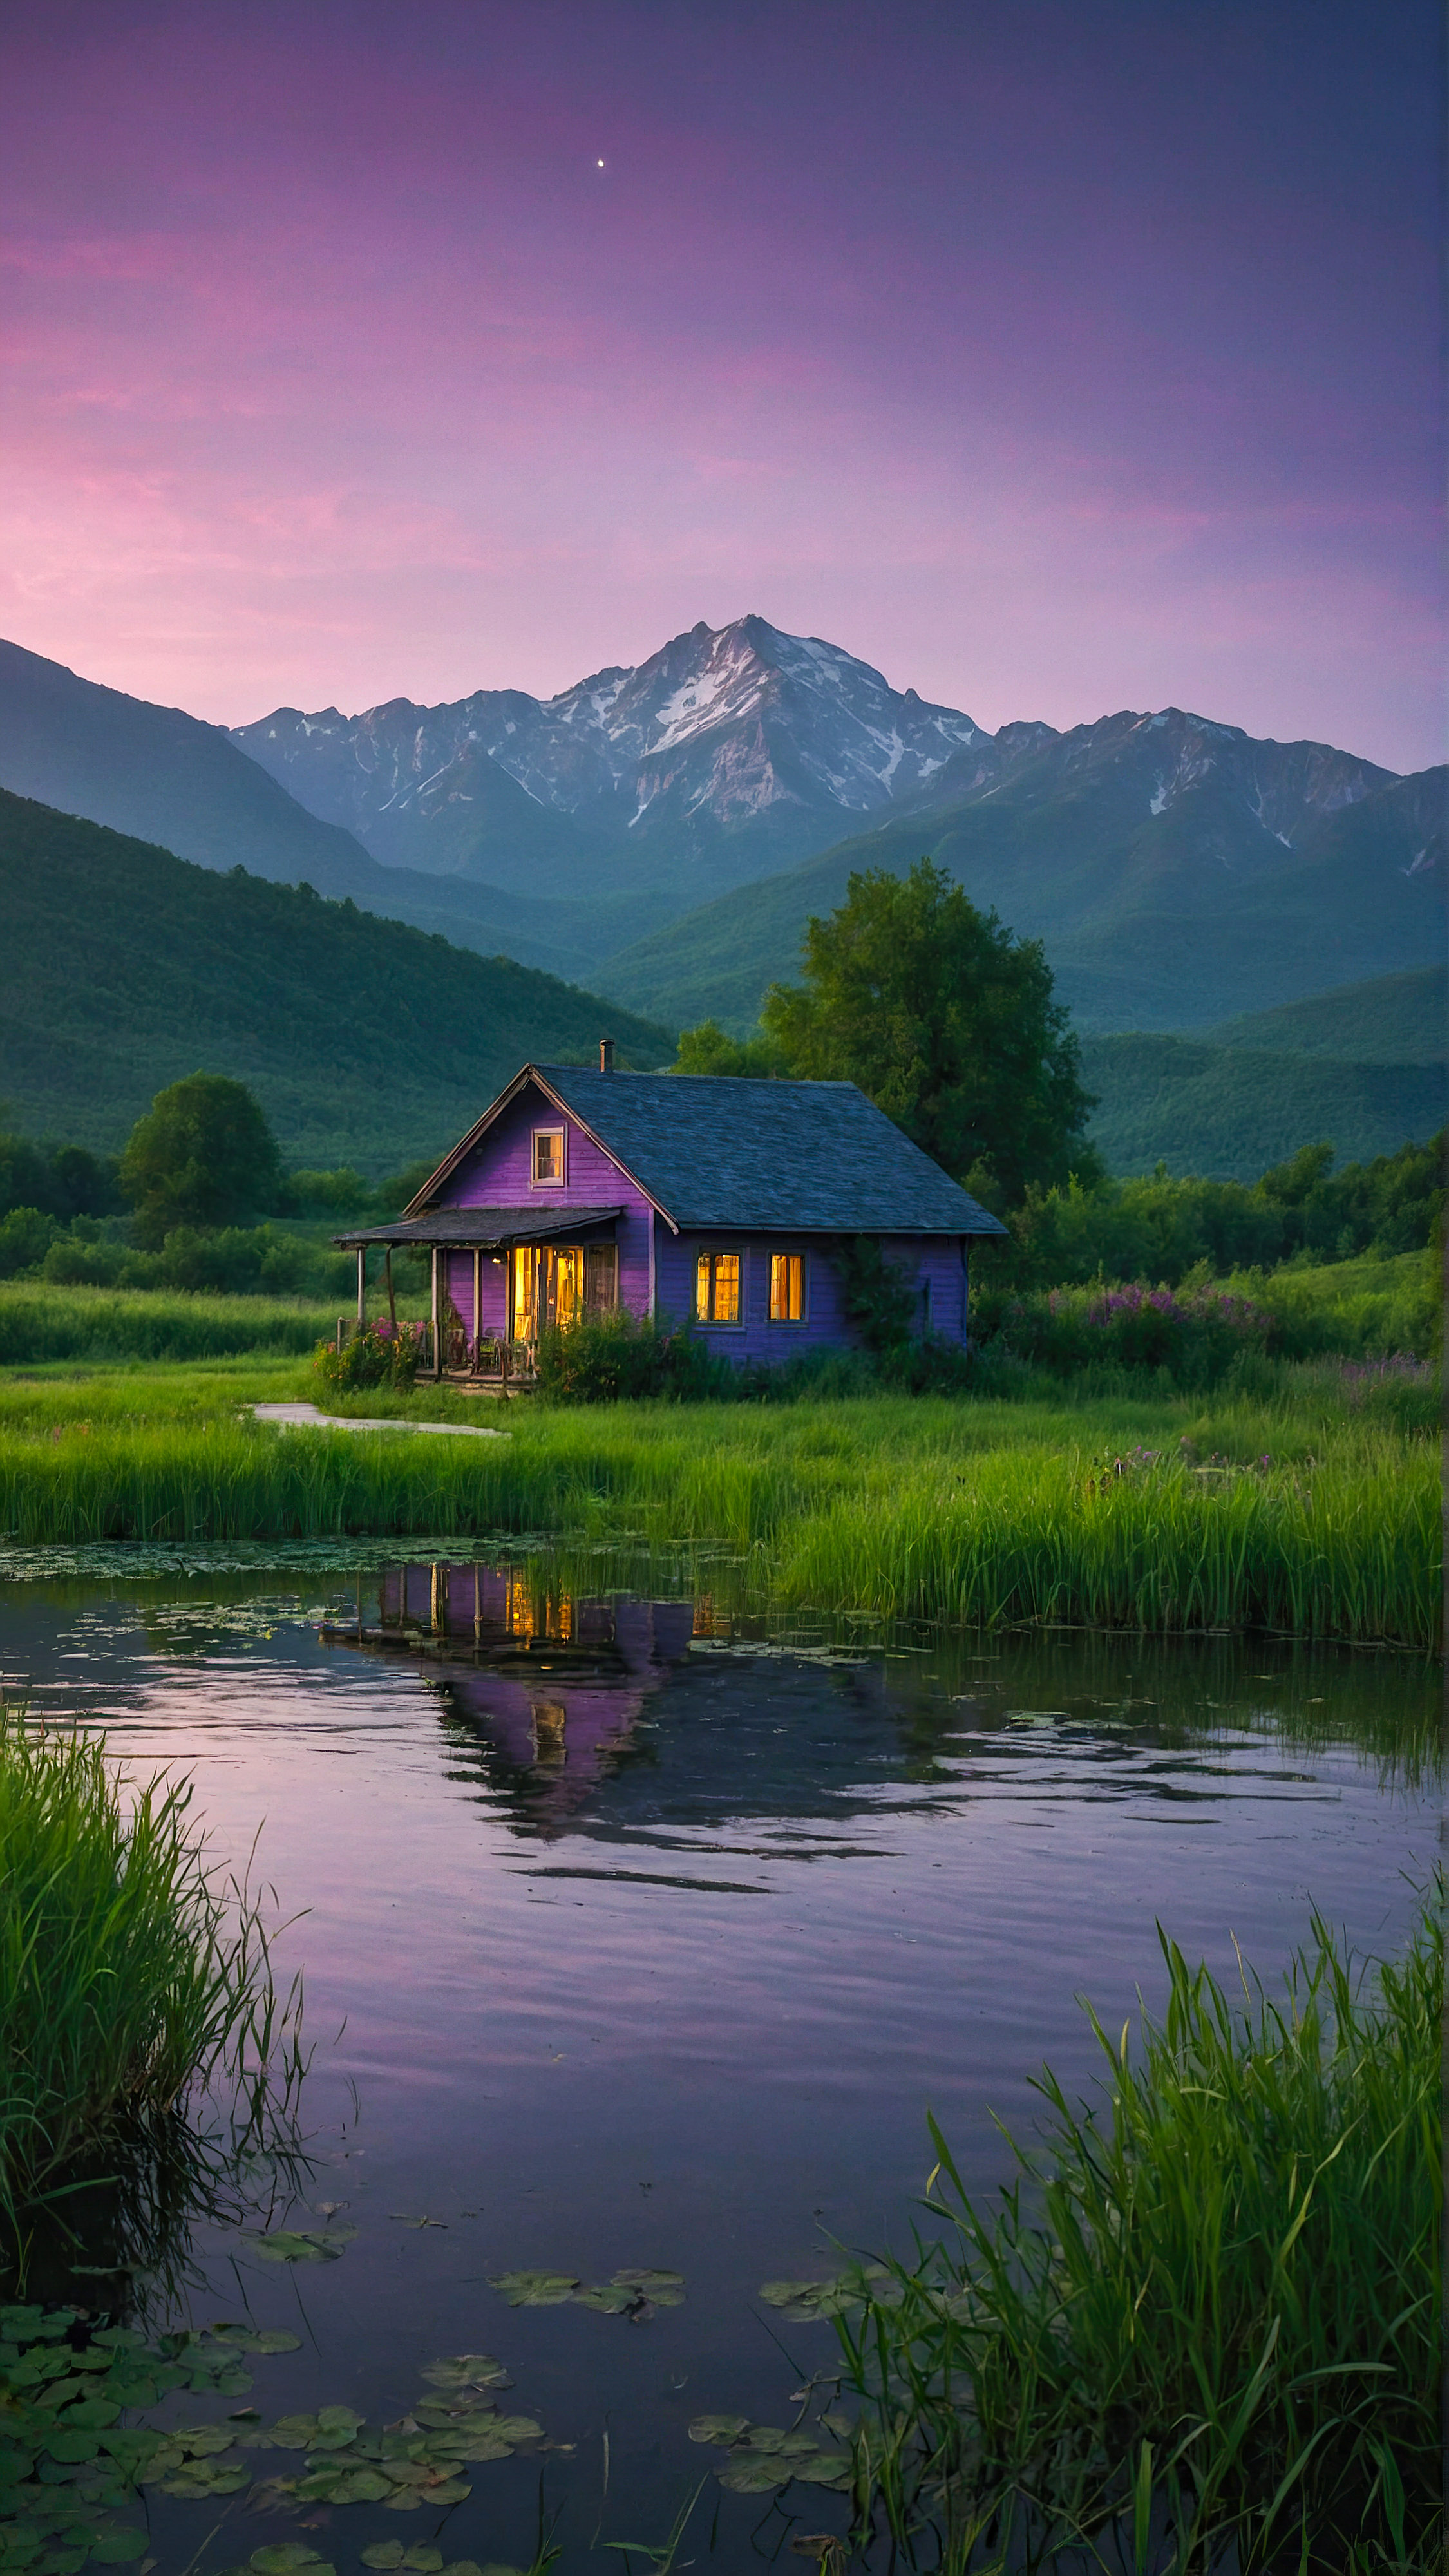 Transformez l'apparence de votre appareil avec le meilleur fond d'écran pour l'écran d'accueil de l'iPhone, un paysage de soirée serein et mystique, avec une petite maison près d'un étang, entourée de verdure luxuriante et de montagnes imposantes sous un ciel violet.